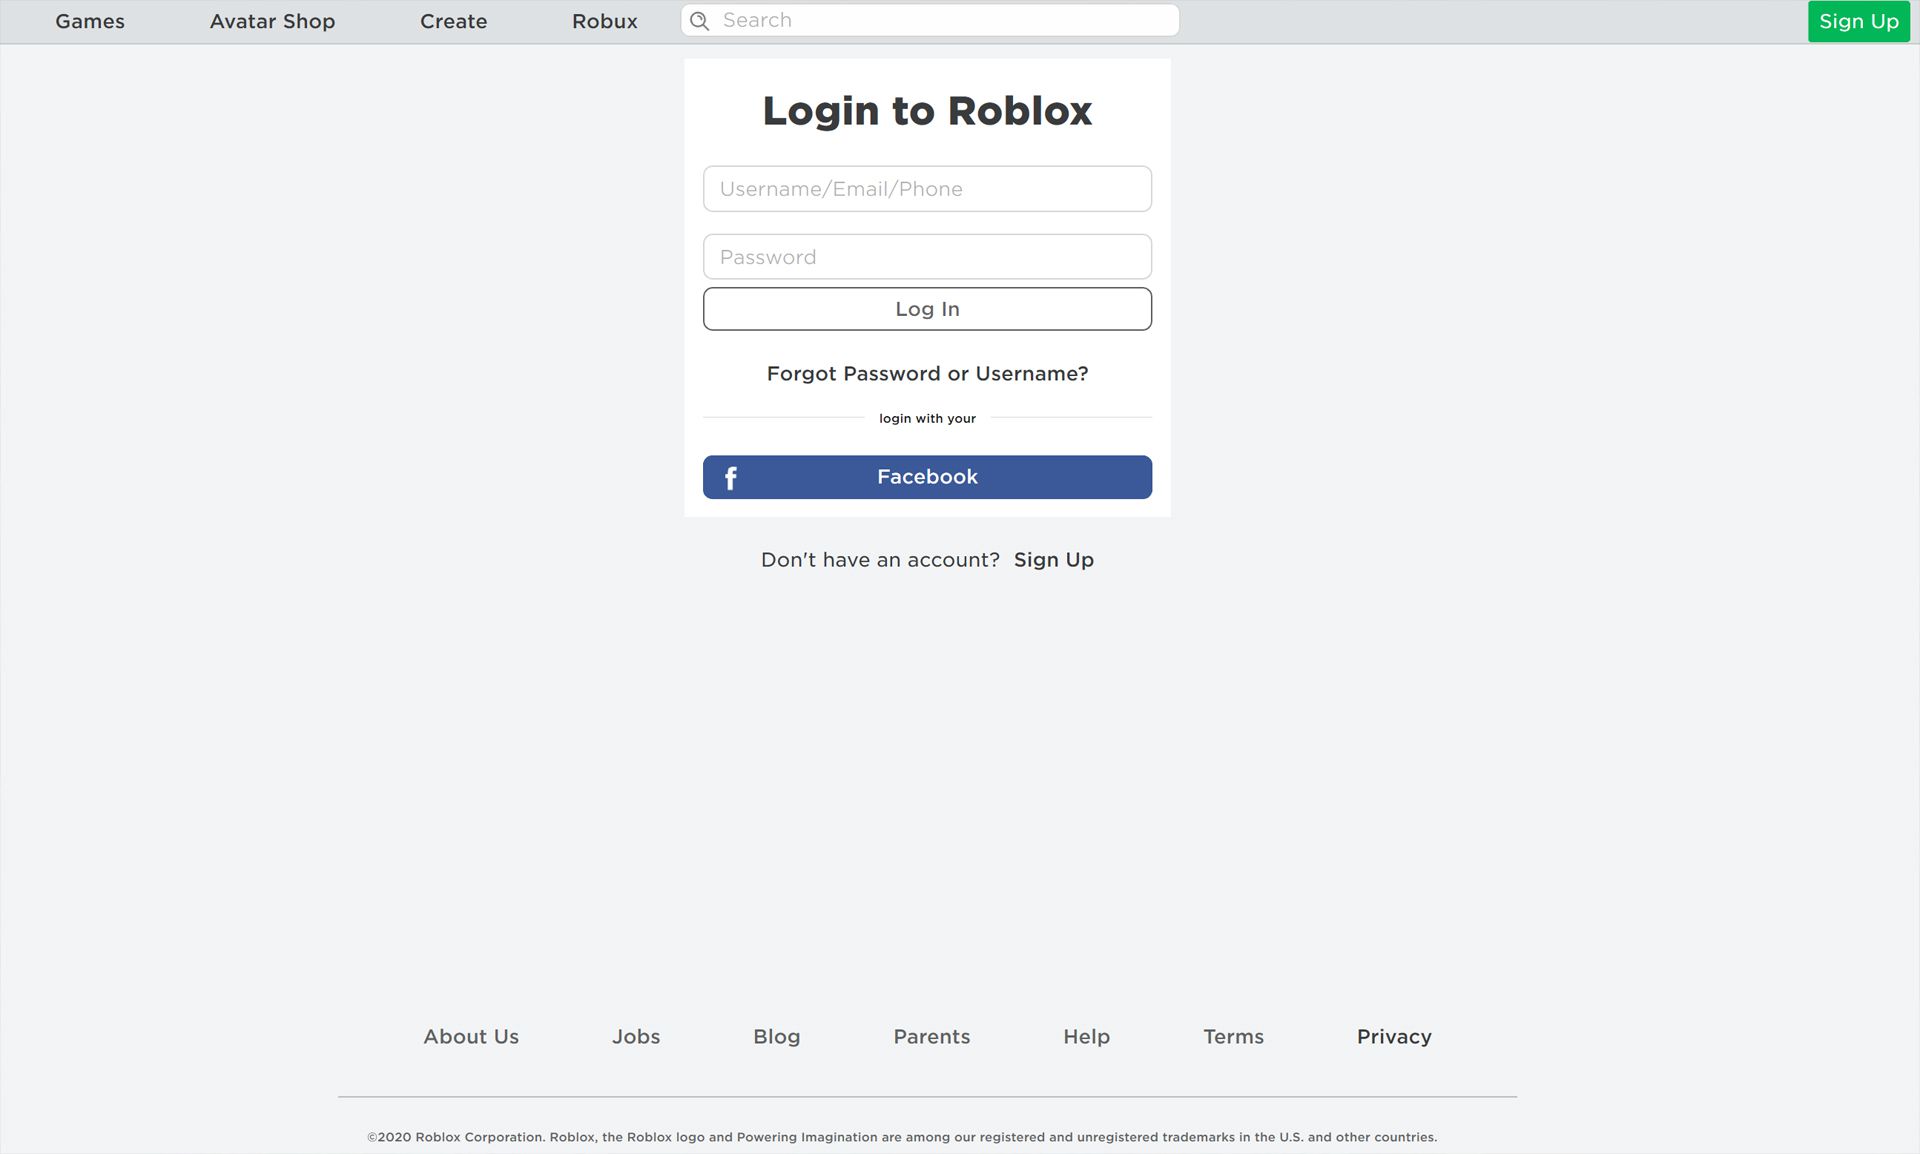 Roblox webbplats för videospel.